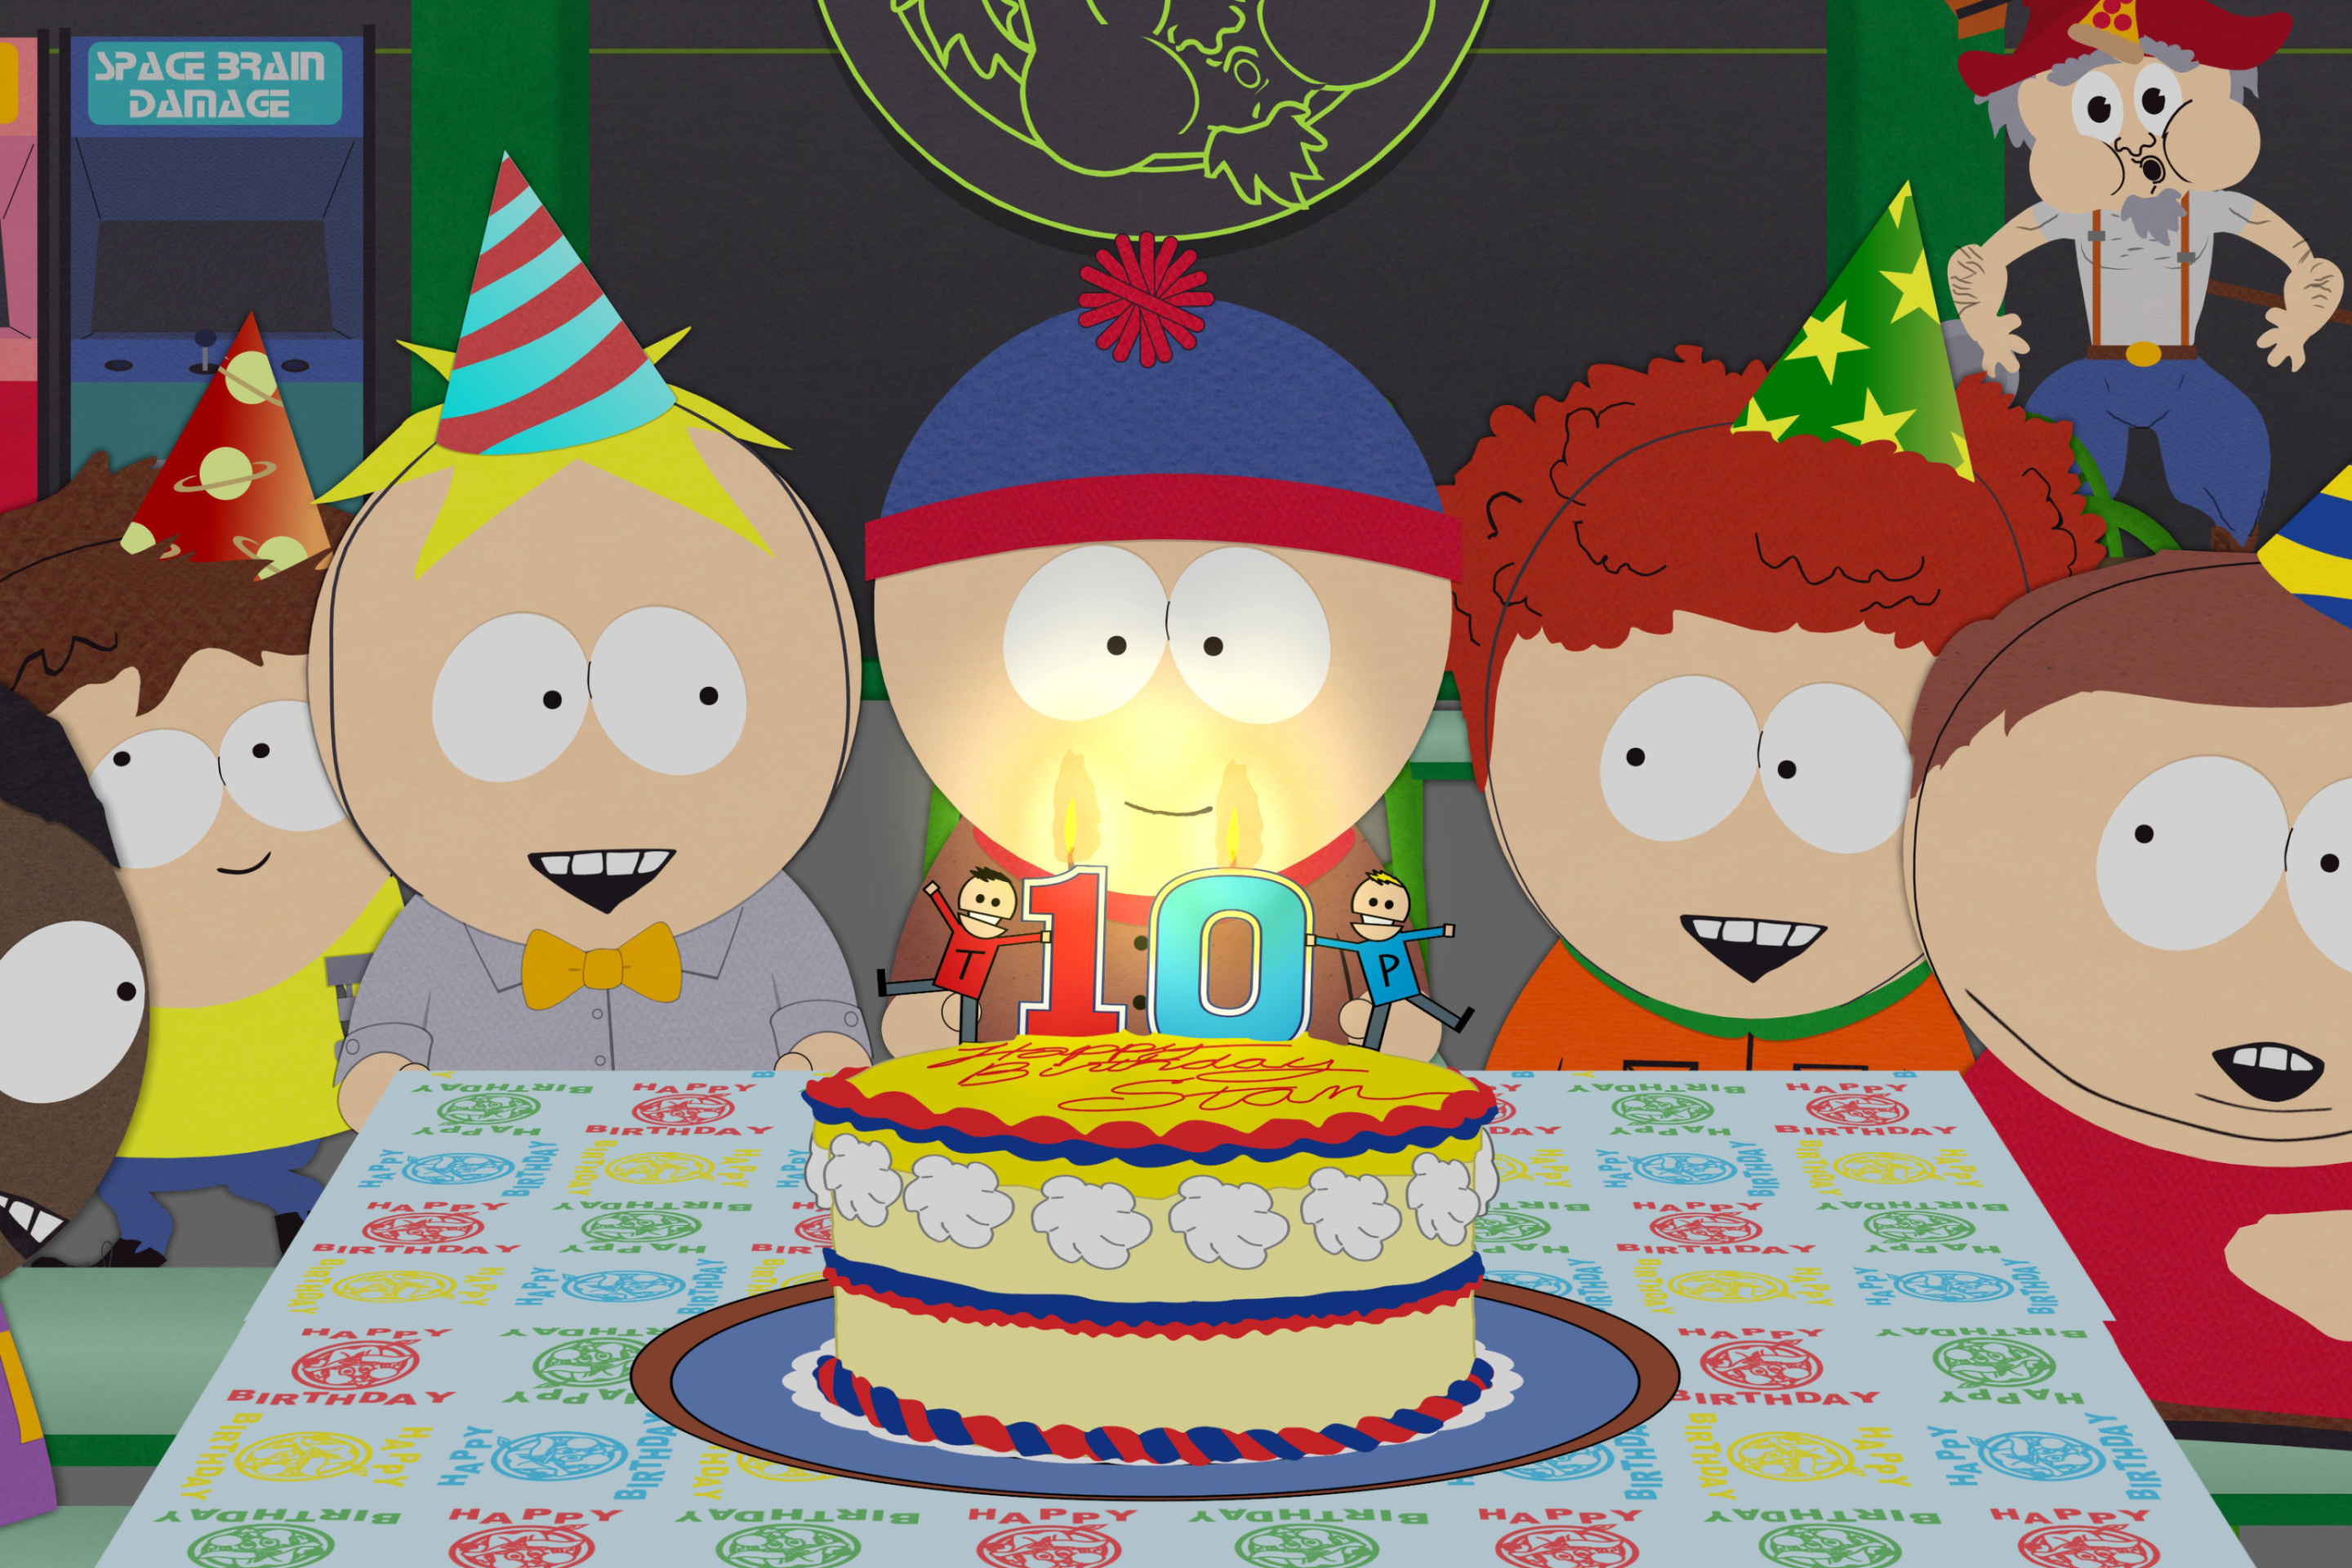 South Park Season 15 Stans Party wallpaper 2880x1920